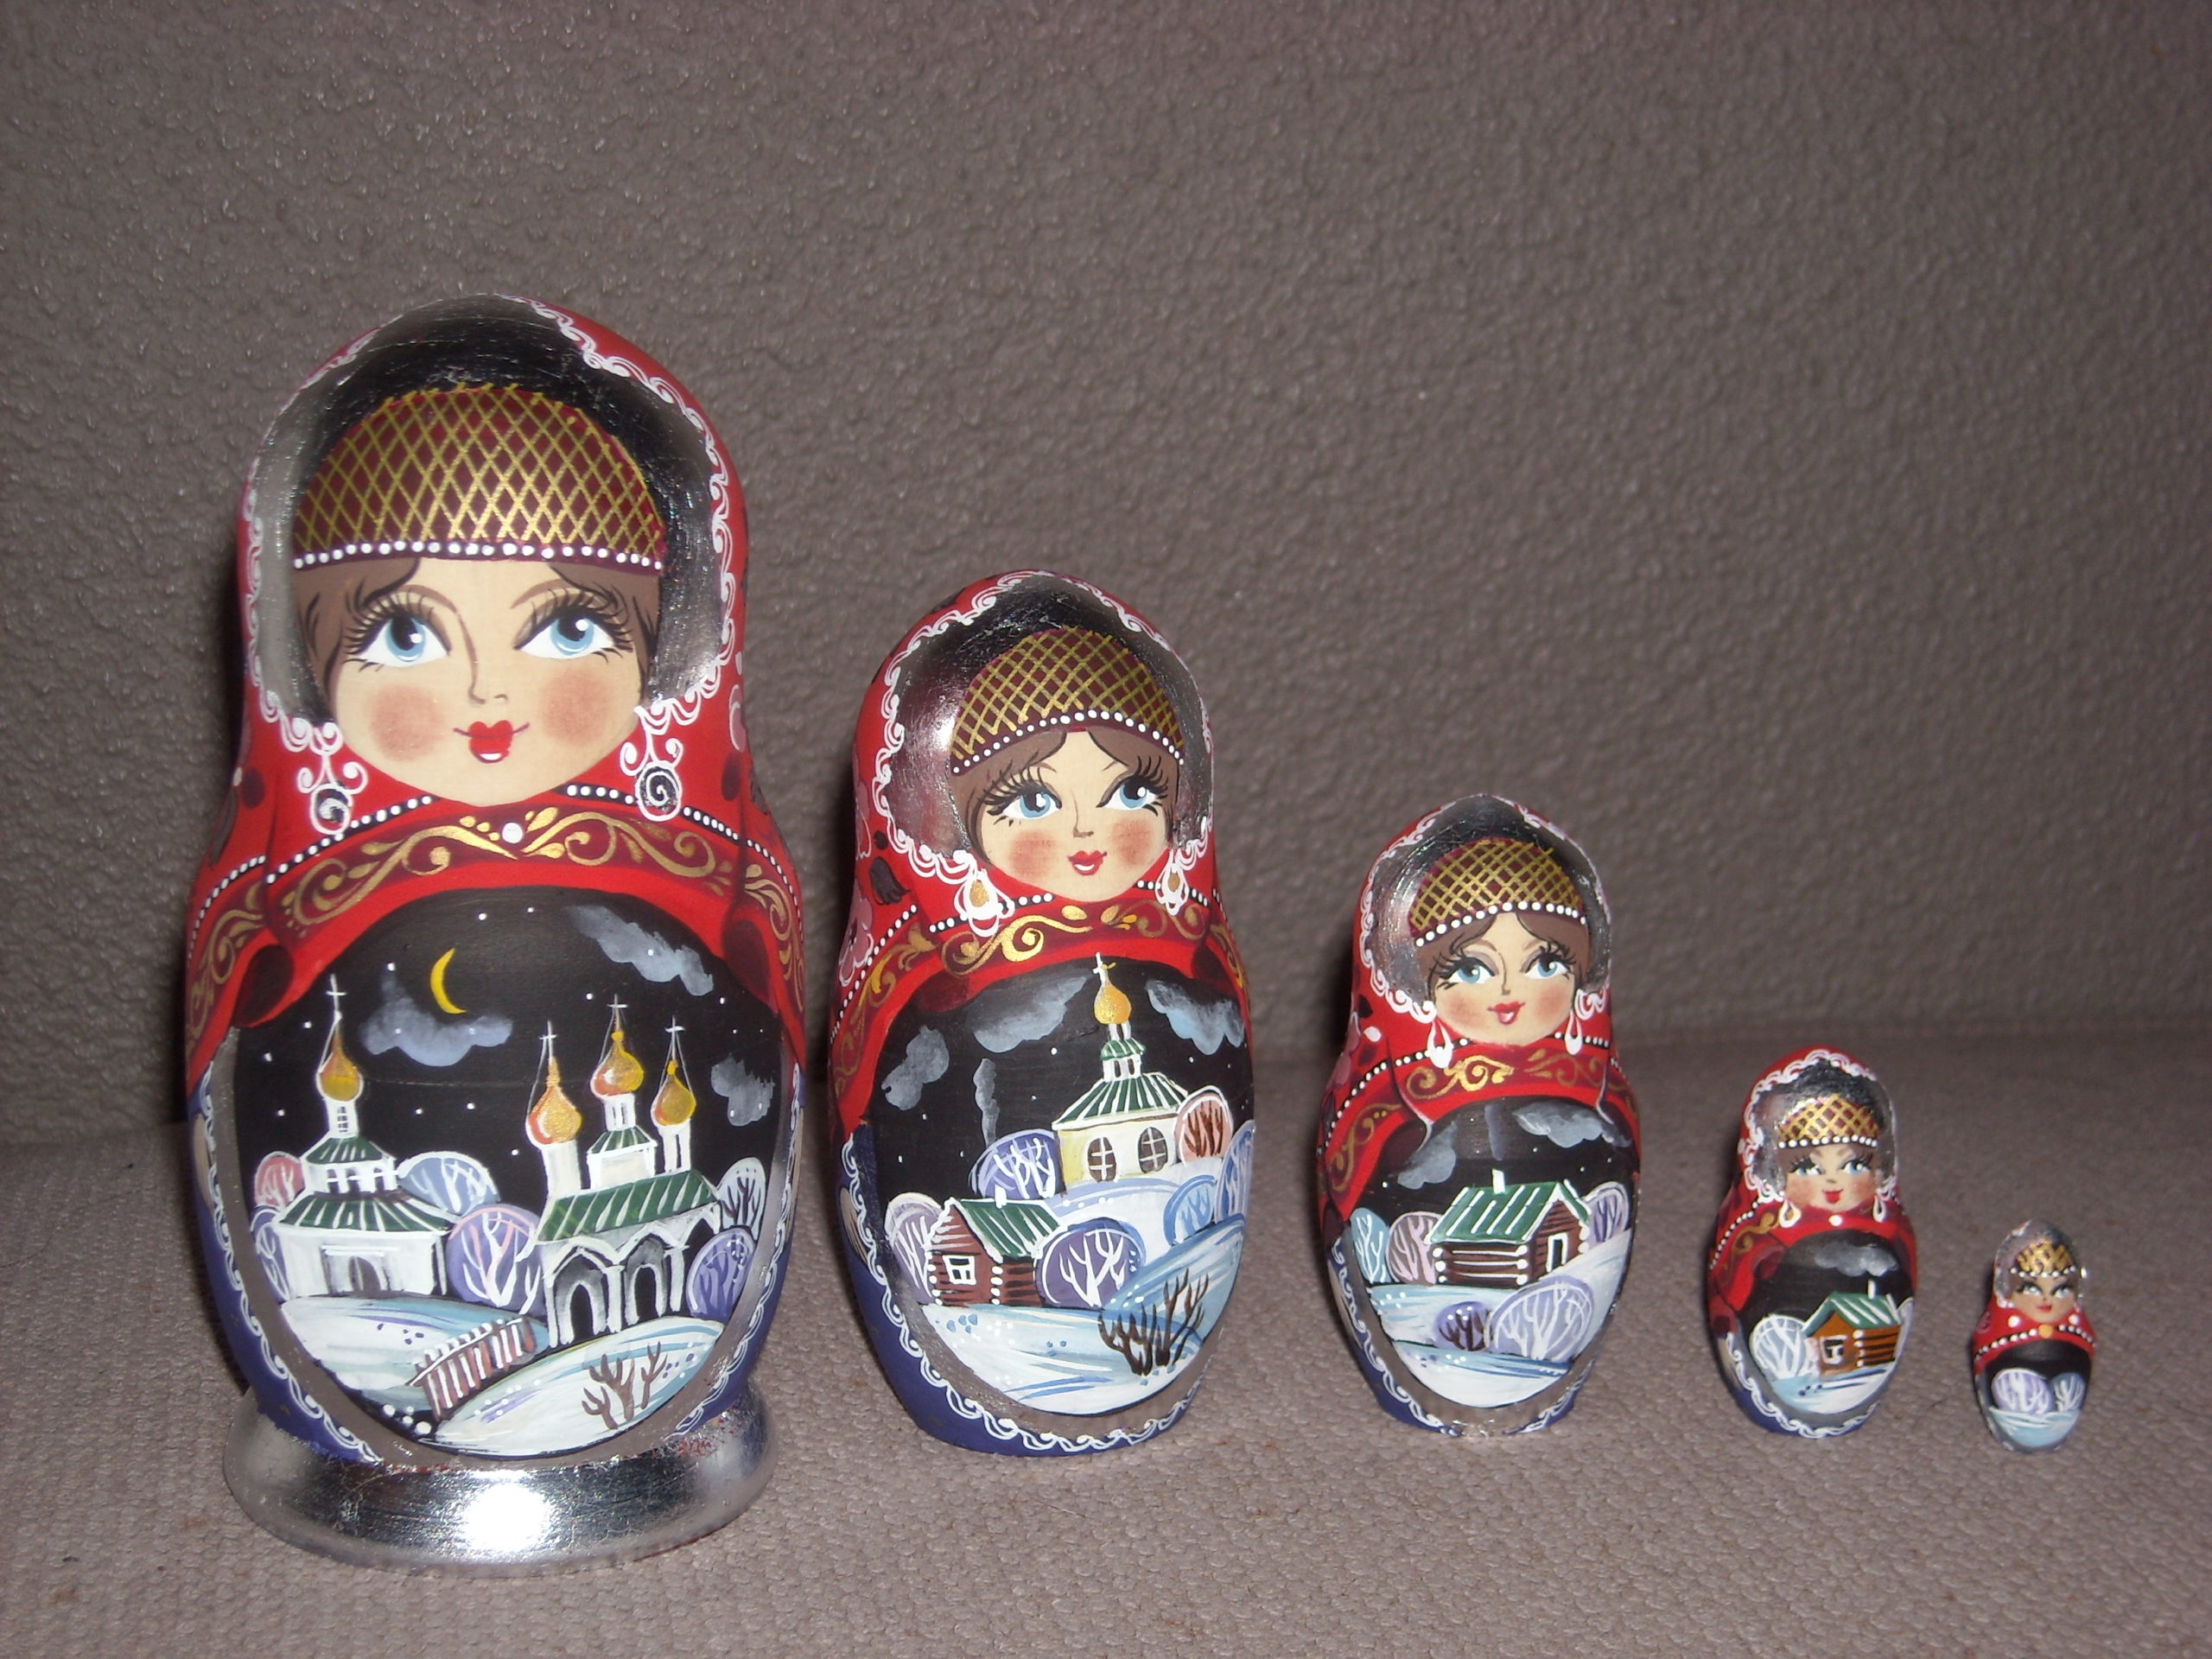 Matriochka, la poupée russe - l'histoire du principal souvenir russe